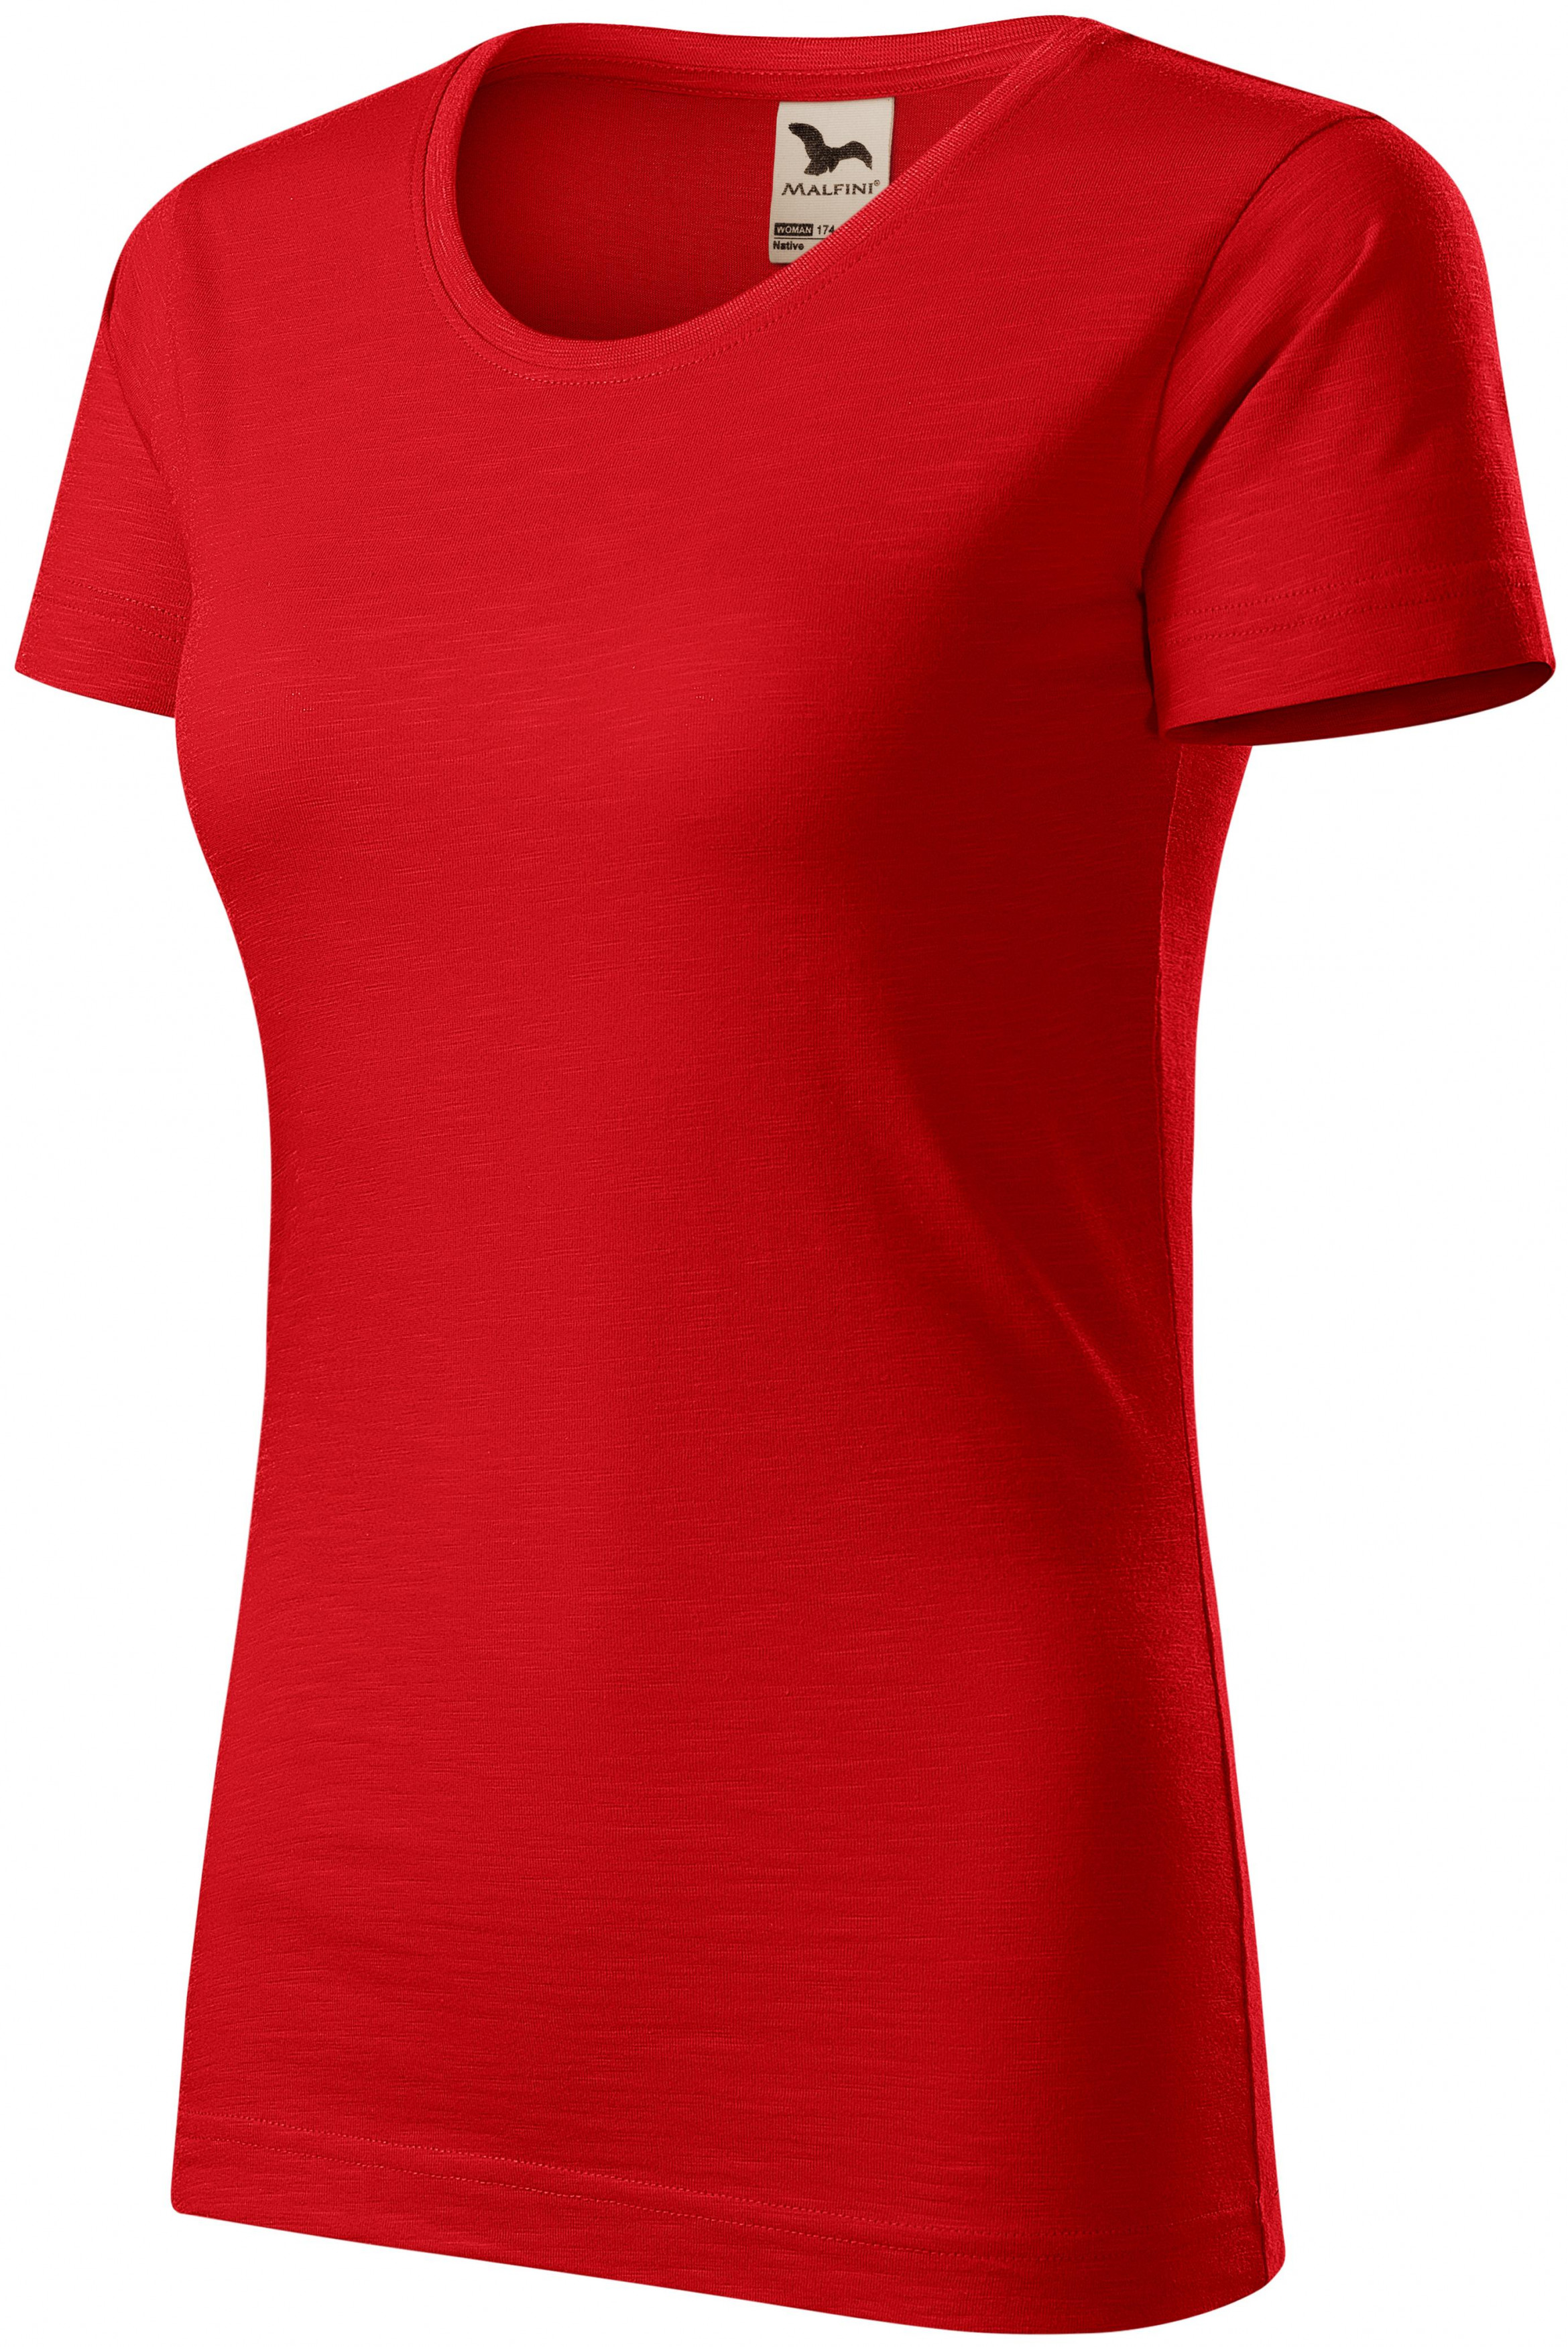 Dámske tričko, štruktúrovaná organická bavlna, červená, XL